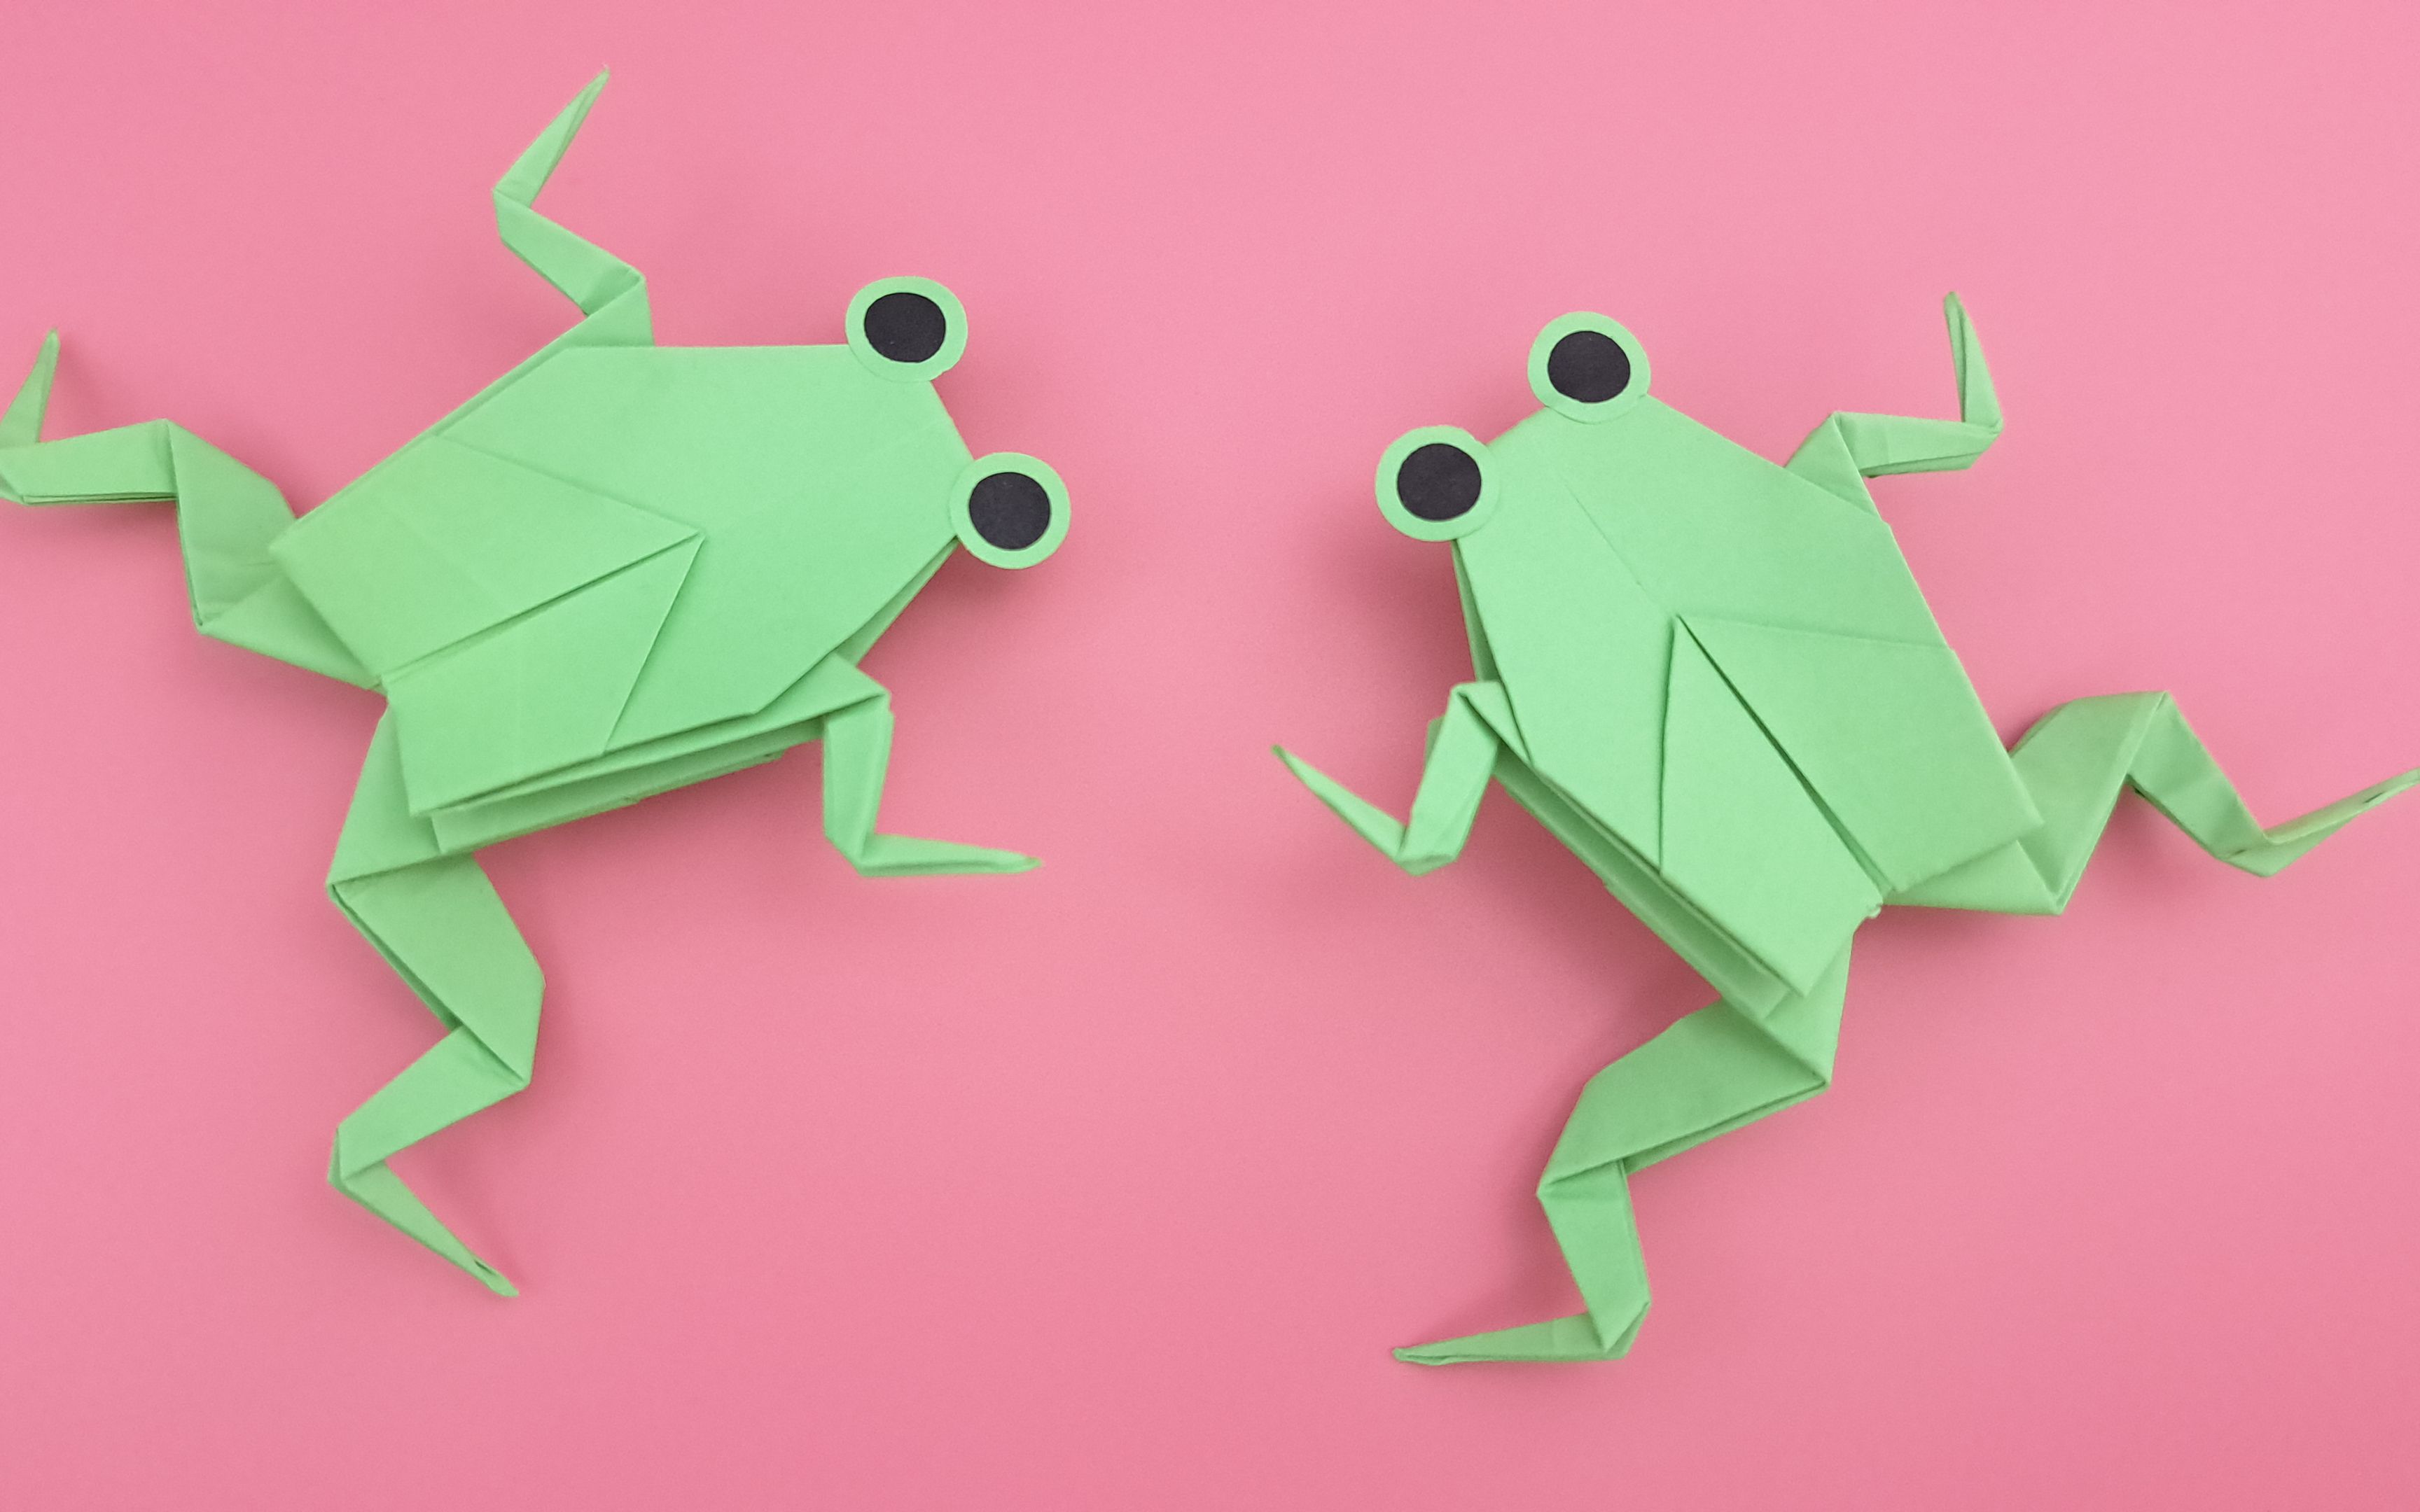 一张纸折可以弹跳的青蛙,非常好玩,小朋友都喜欢